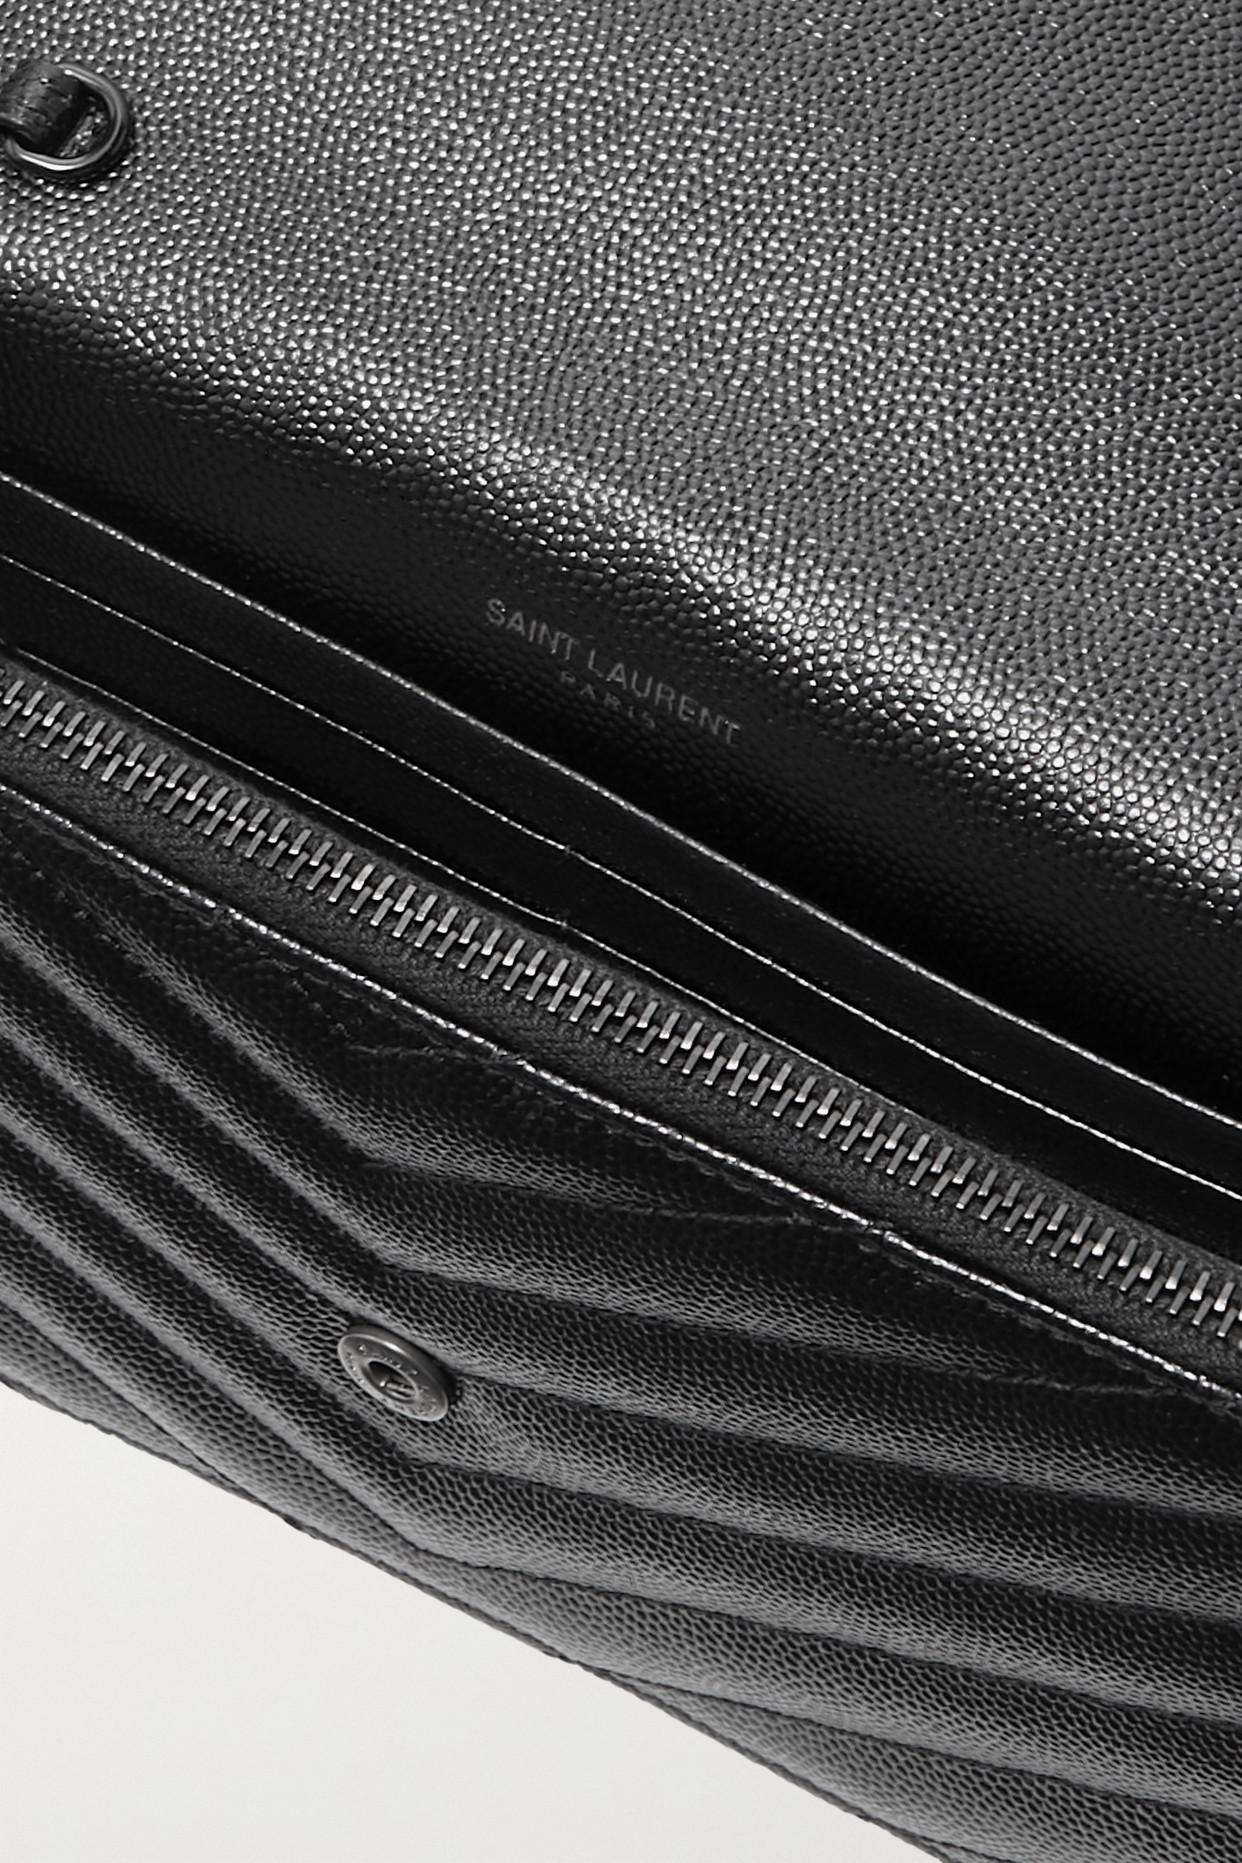 Cassandre Saint Laurent Matelassé Chain Wallet In Patent Leather